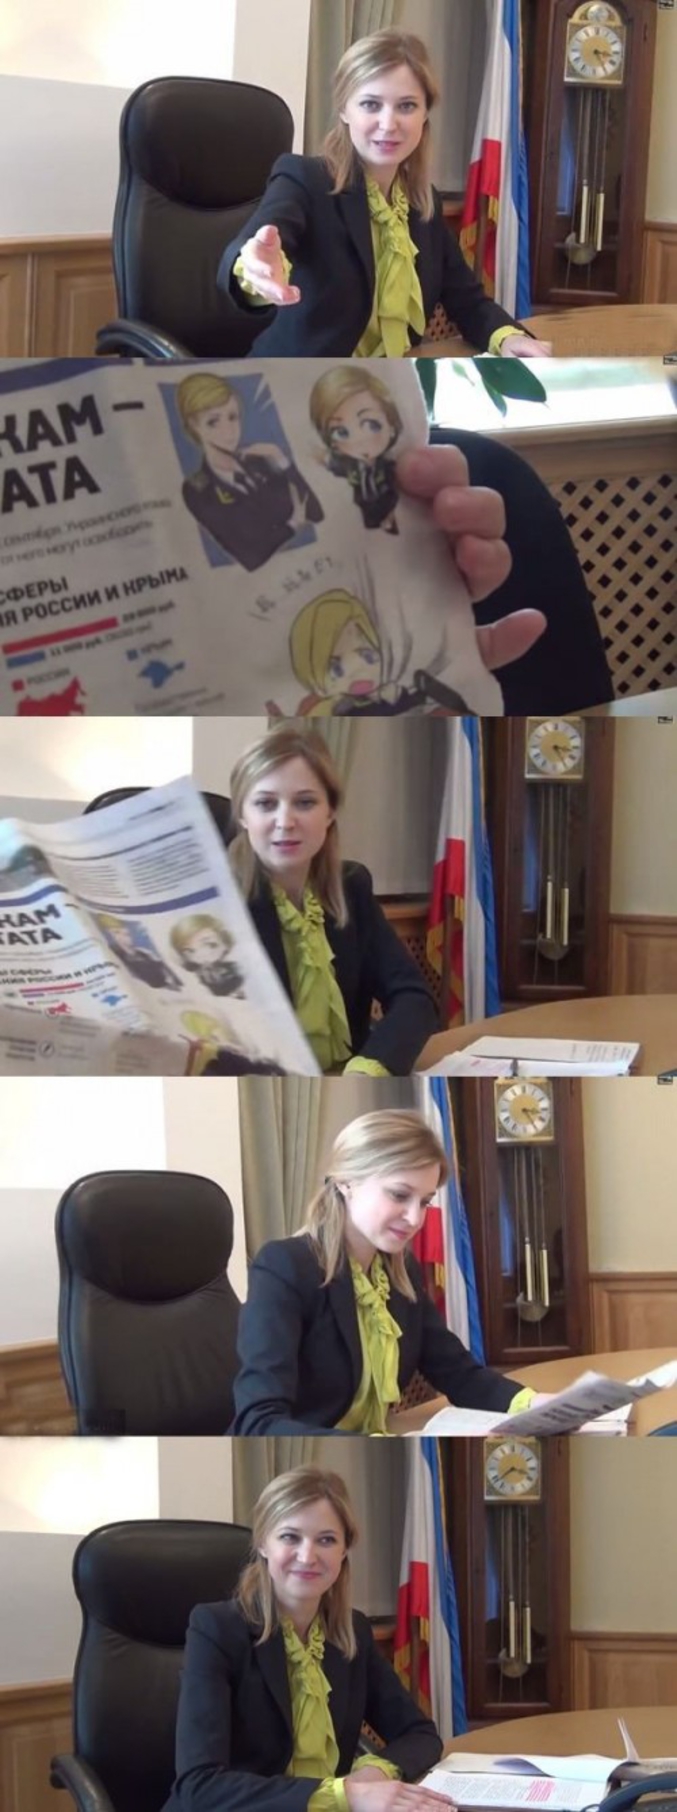 Natalia Vladimirovna Poklonskaïa, procureure de Crimée, réagit aux dessins de personnages auxquels elle ressemble. Coquine.